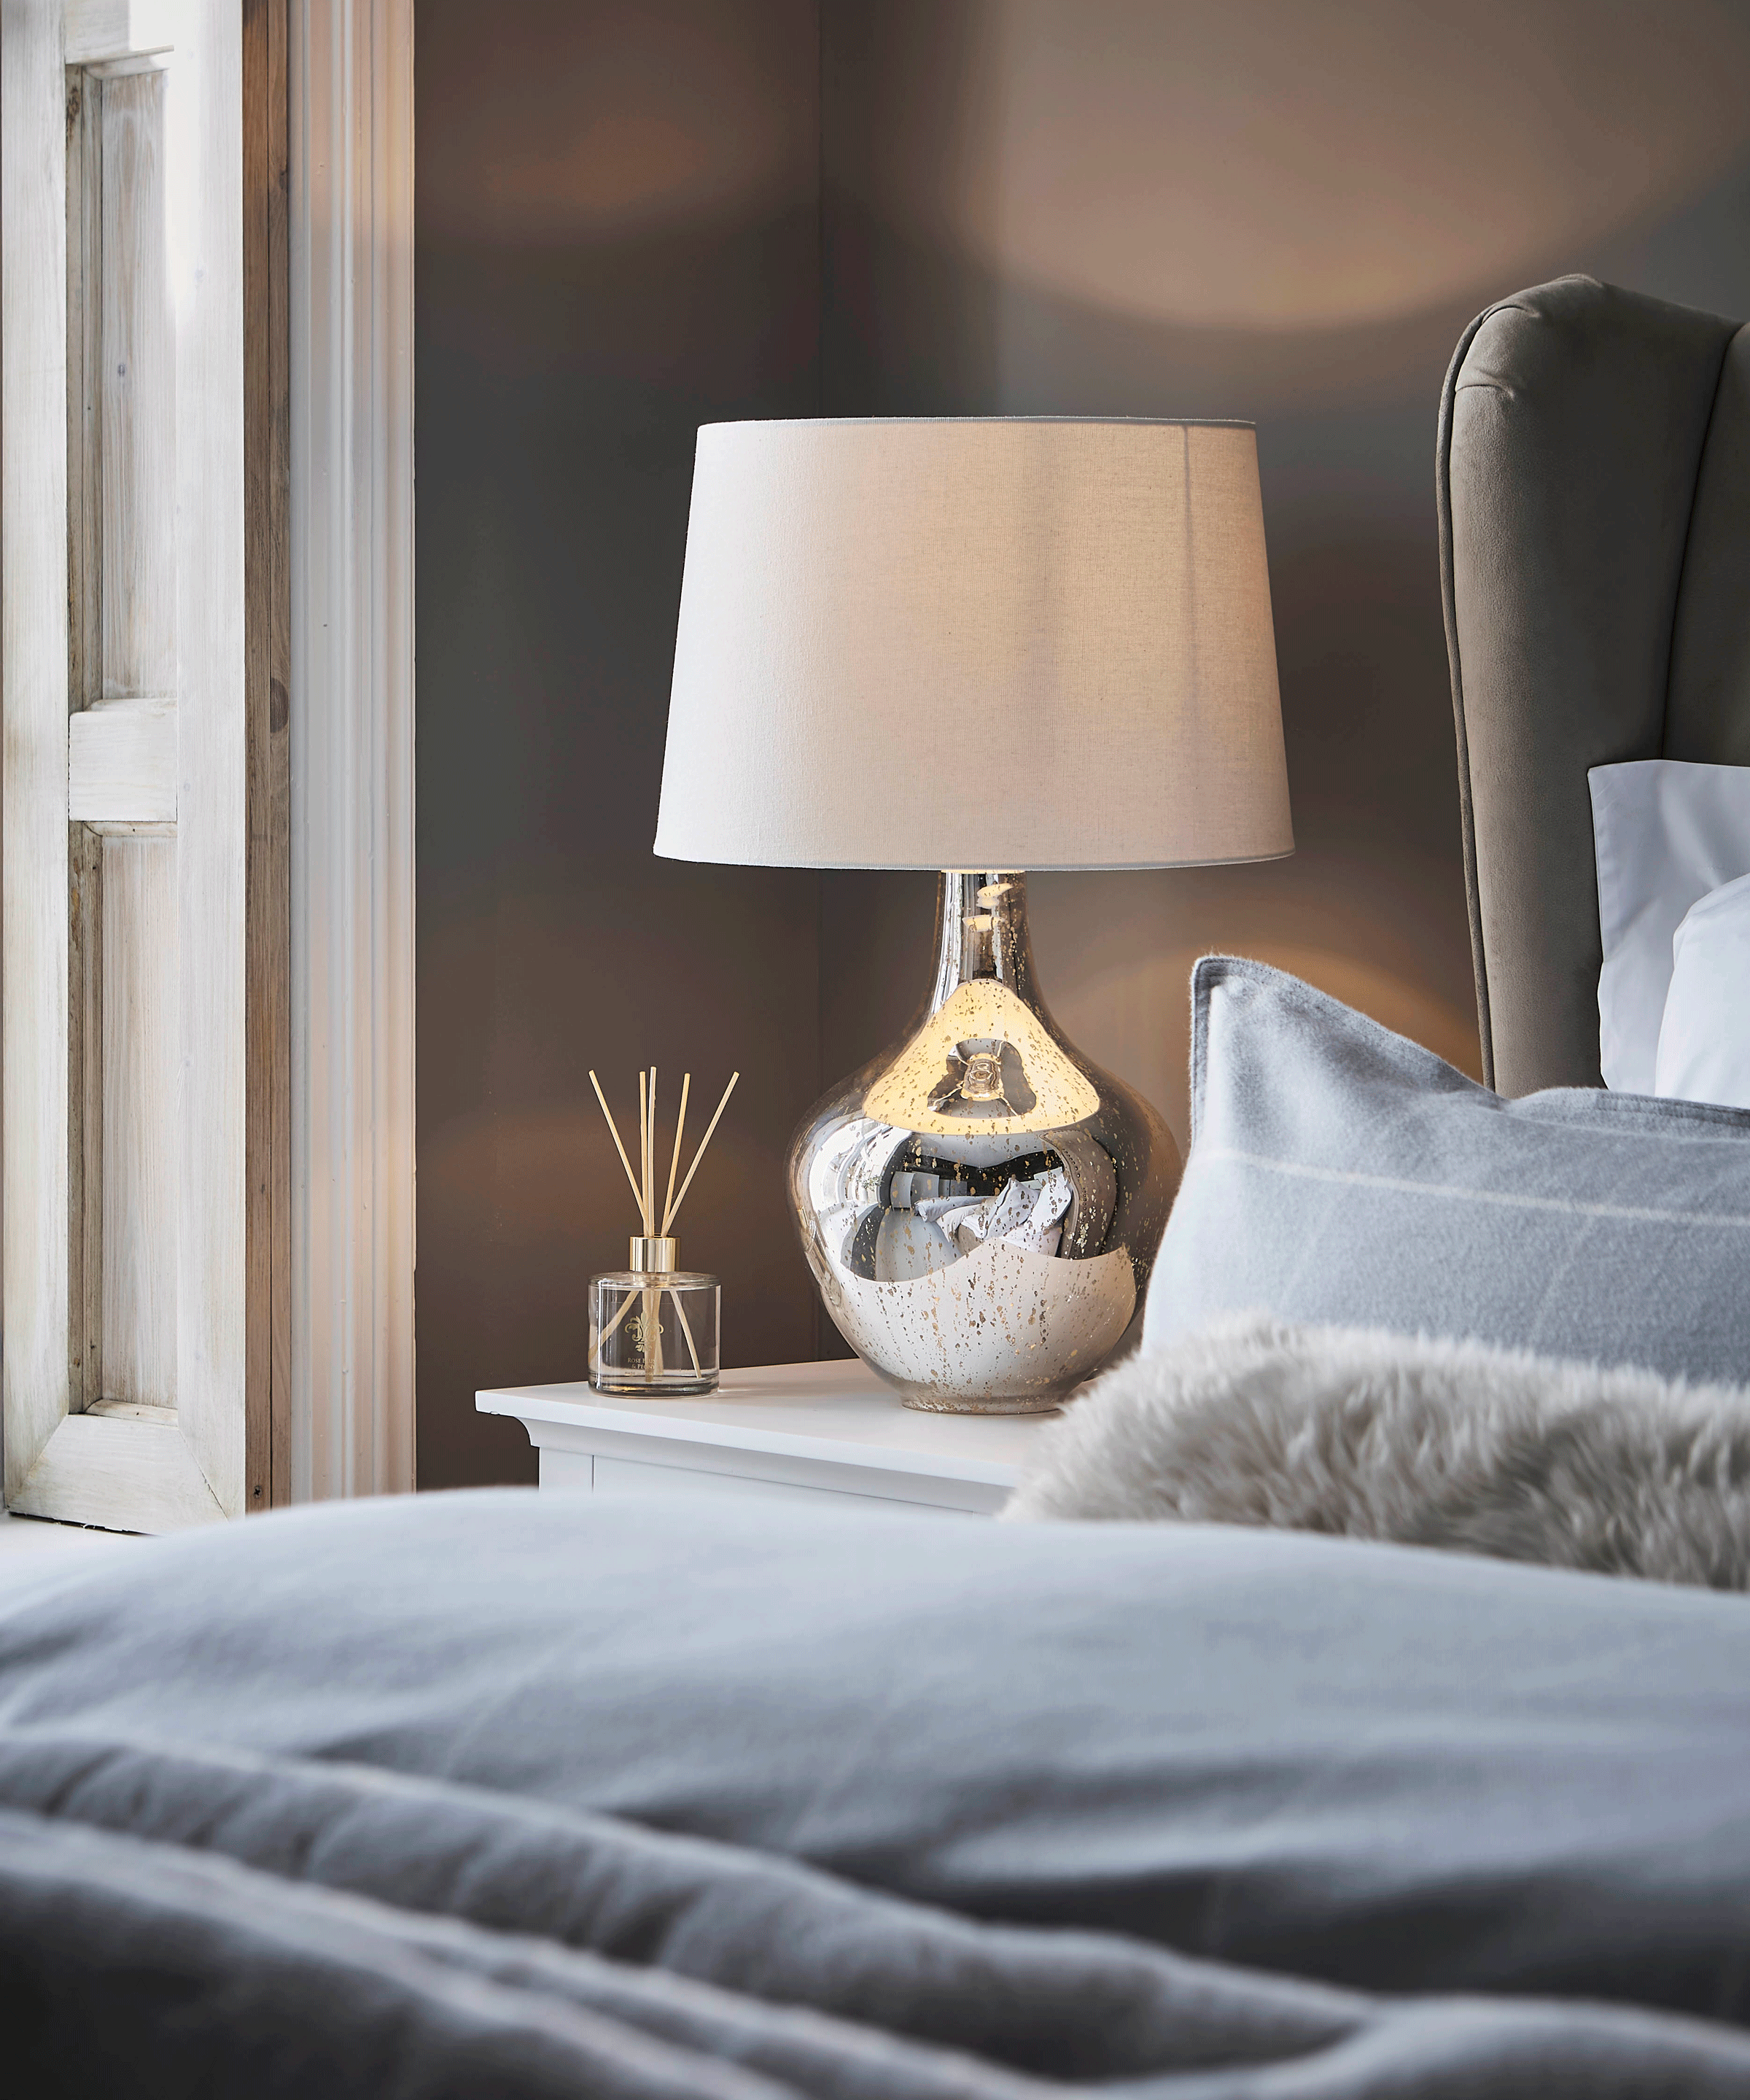 Dunelm metallic lamp in bedroom